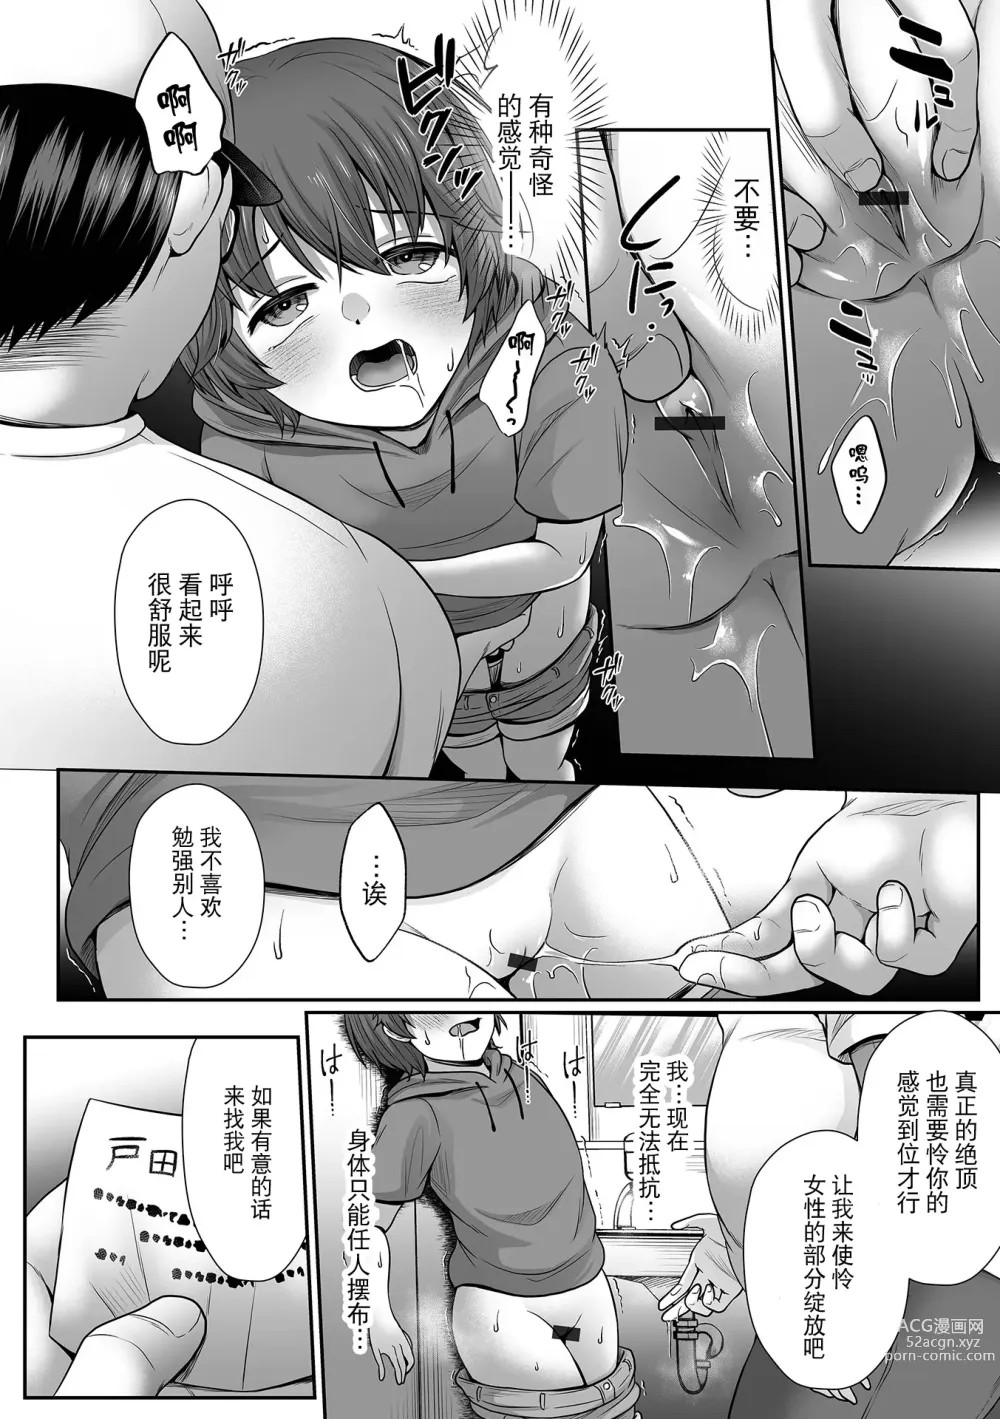 Page 8 of manga Boku no Kimochi Ii Himitsu